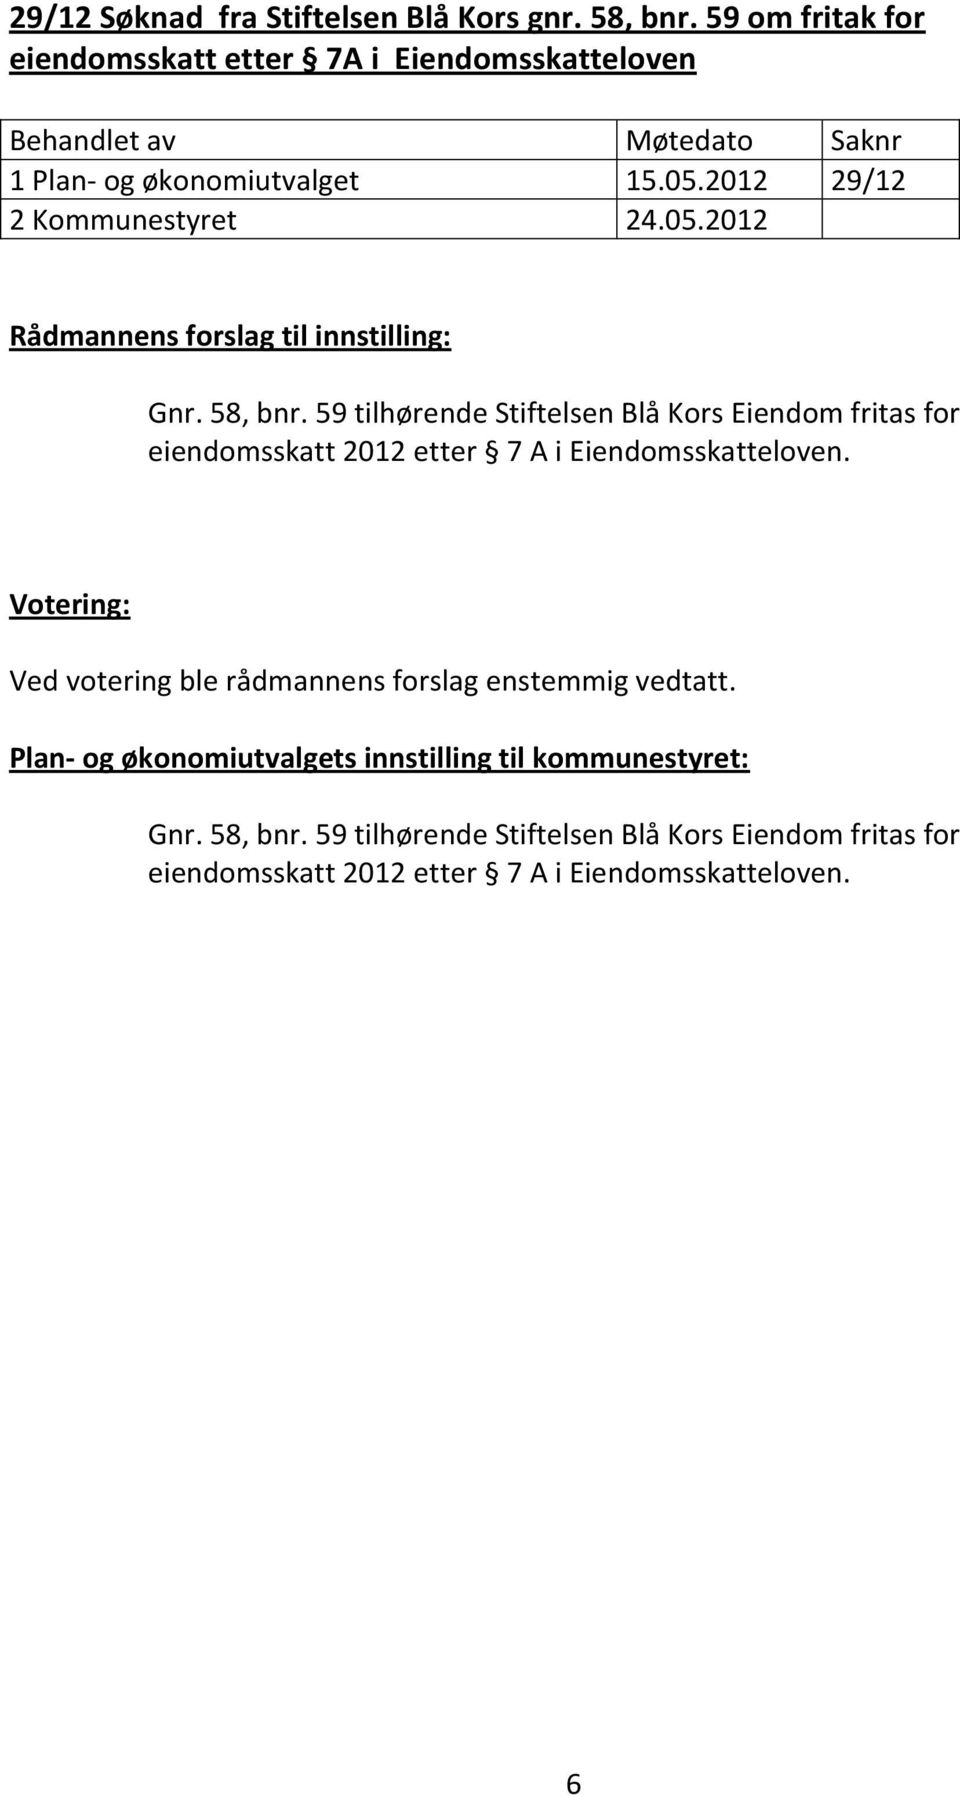 59 tilhørende Stiftelsen Blå Kors Eiendom fritas for eiendomsskatt 2012 etter 7 A i Eiendomsskatteloven.